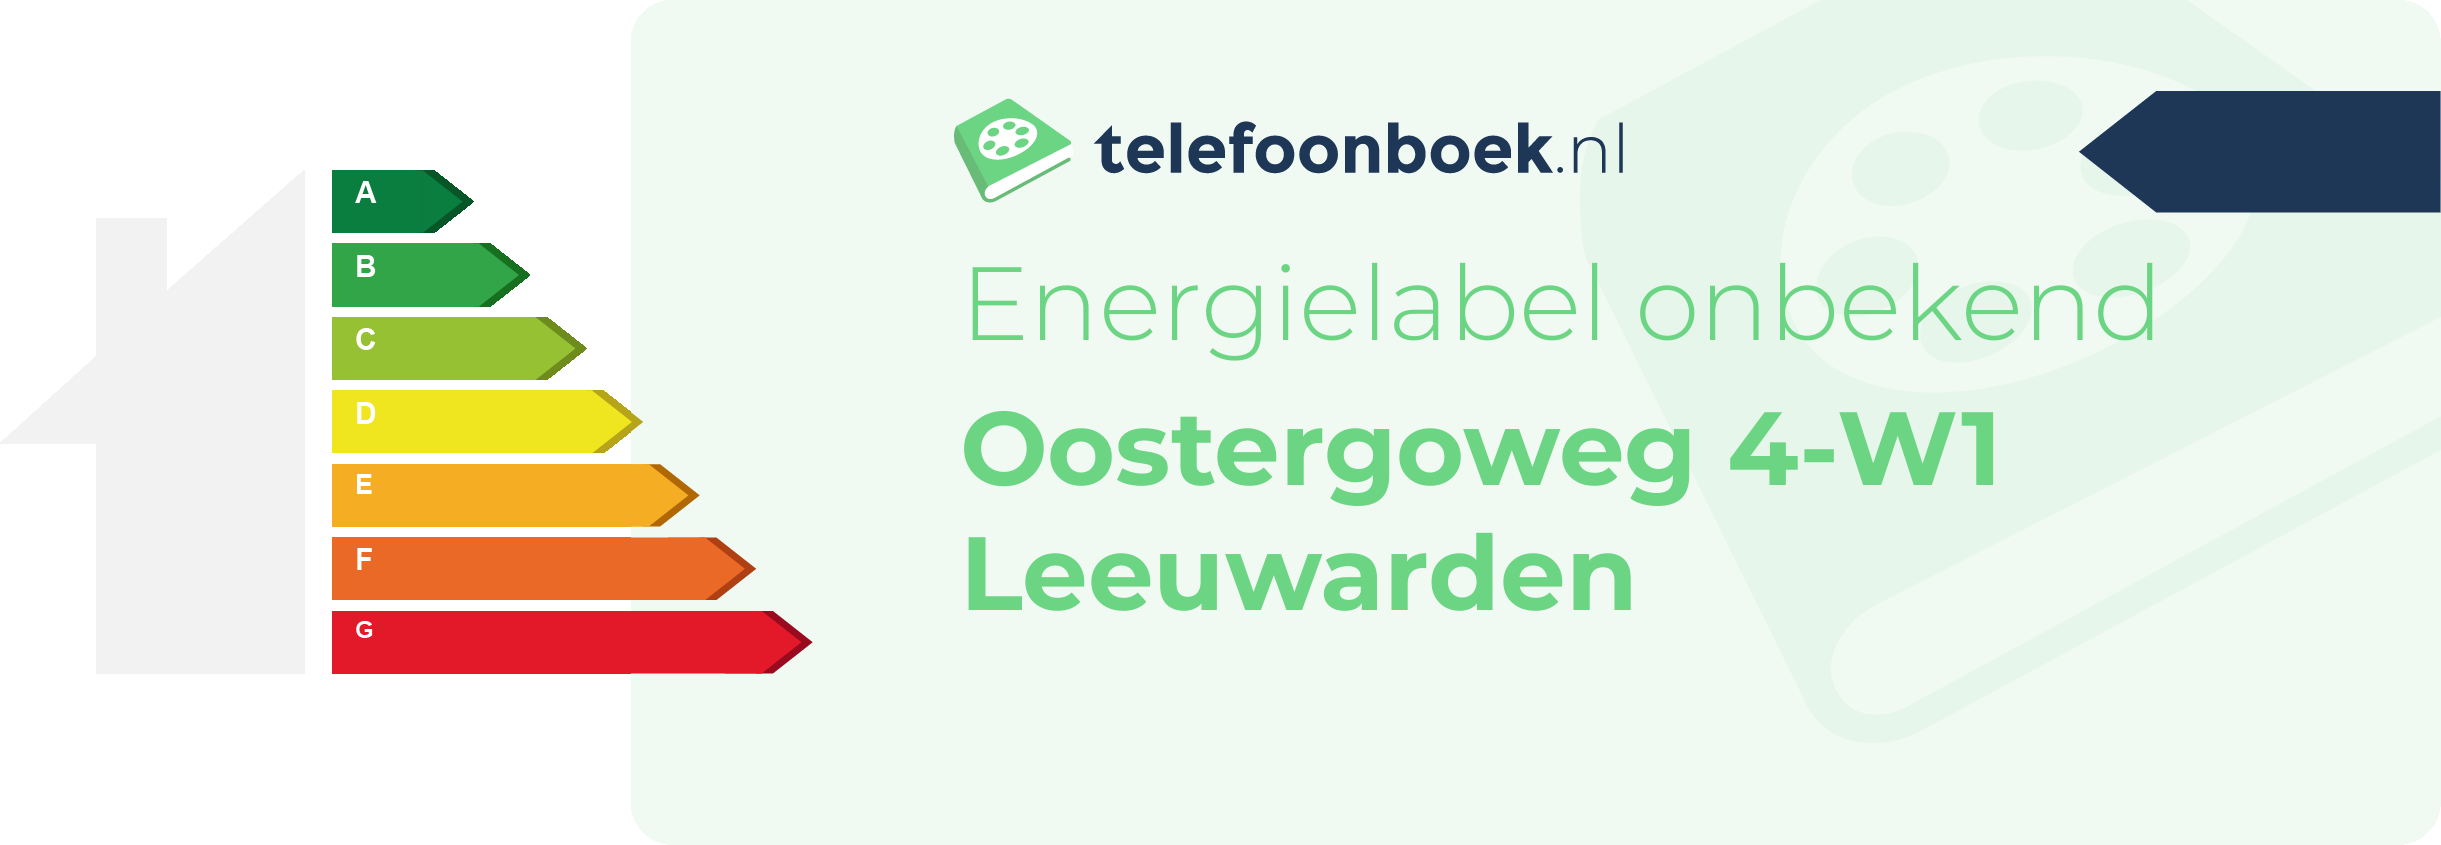 Energielabel Oostergoweg 4-W1 Leeuwarden